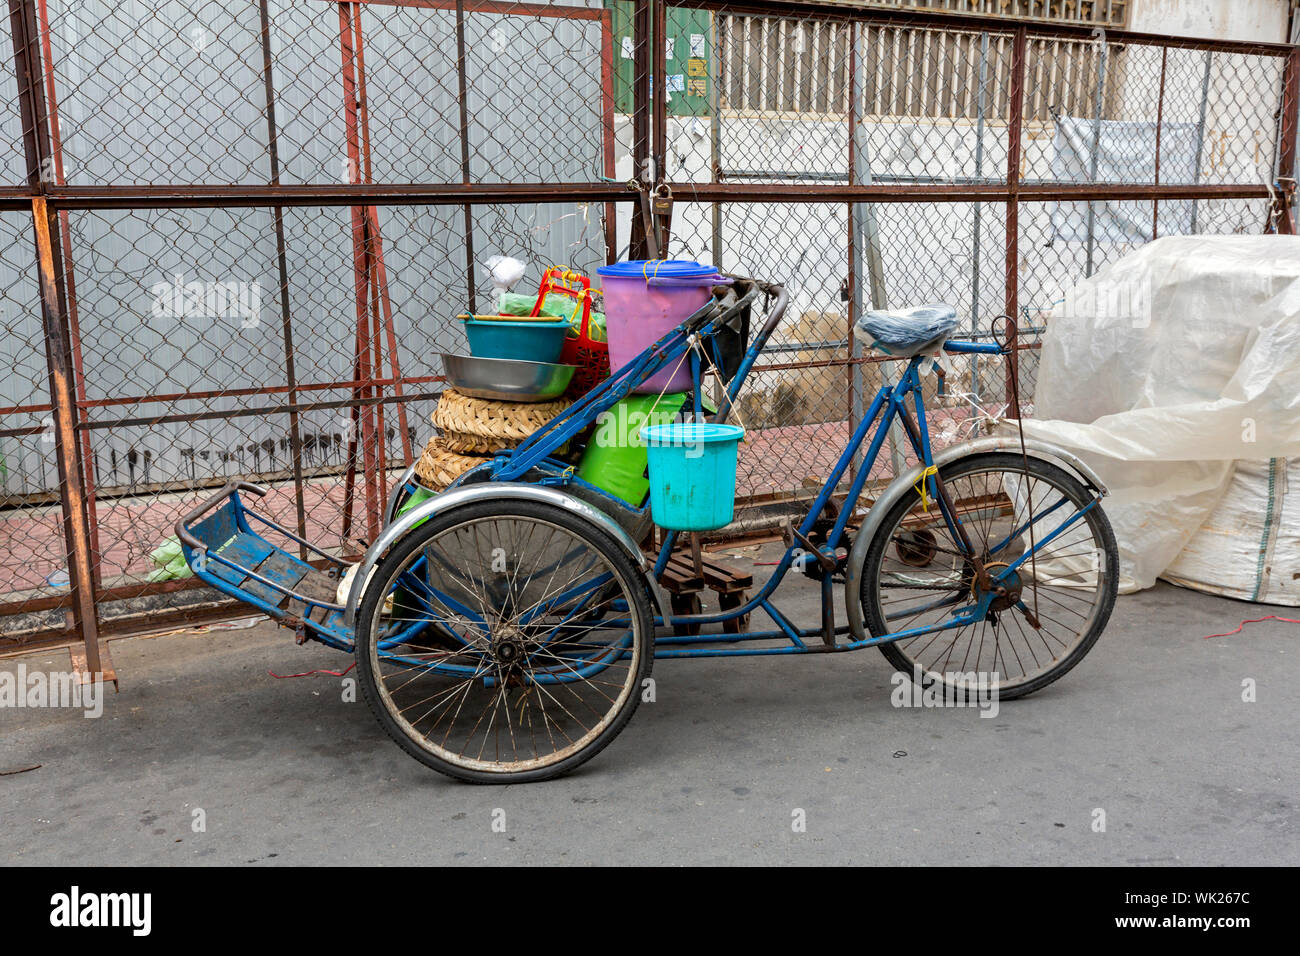 Ein cyclo mit Lebensmitteln Lieferung Utensilien geladen wird auf einer Straße der Stadt geparkt, während der Treiber einen in städtischen Phnom Penh, Kambodscha. Stockfoto